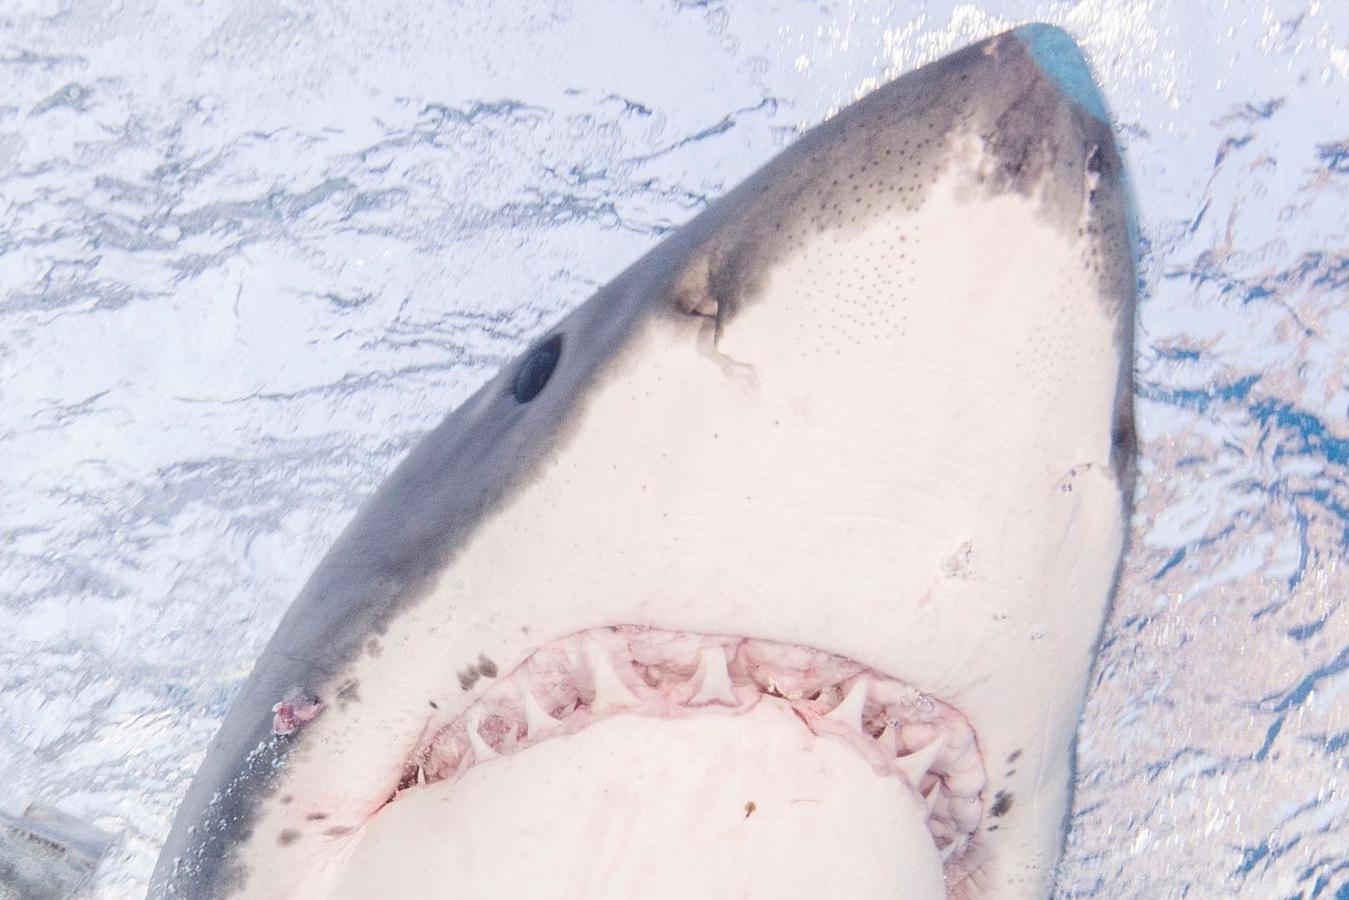  Не растерялся: 60-летний серфер отбился от акулы голыми руками